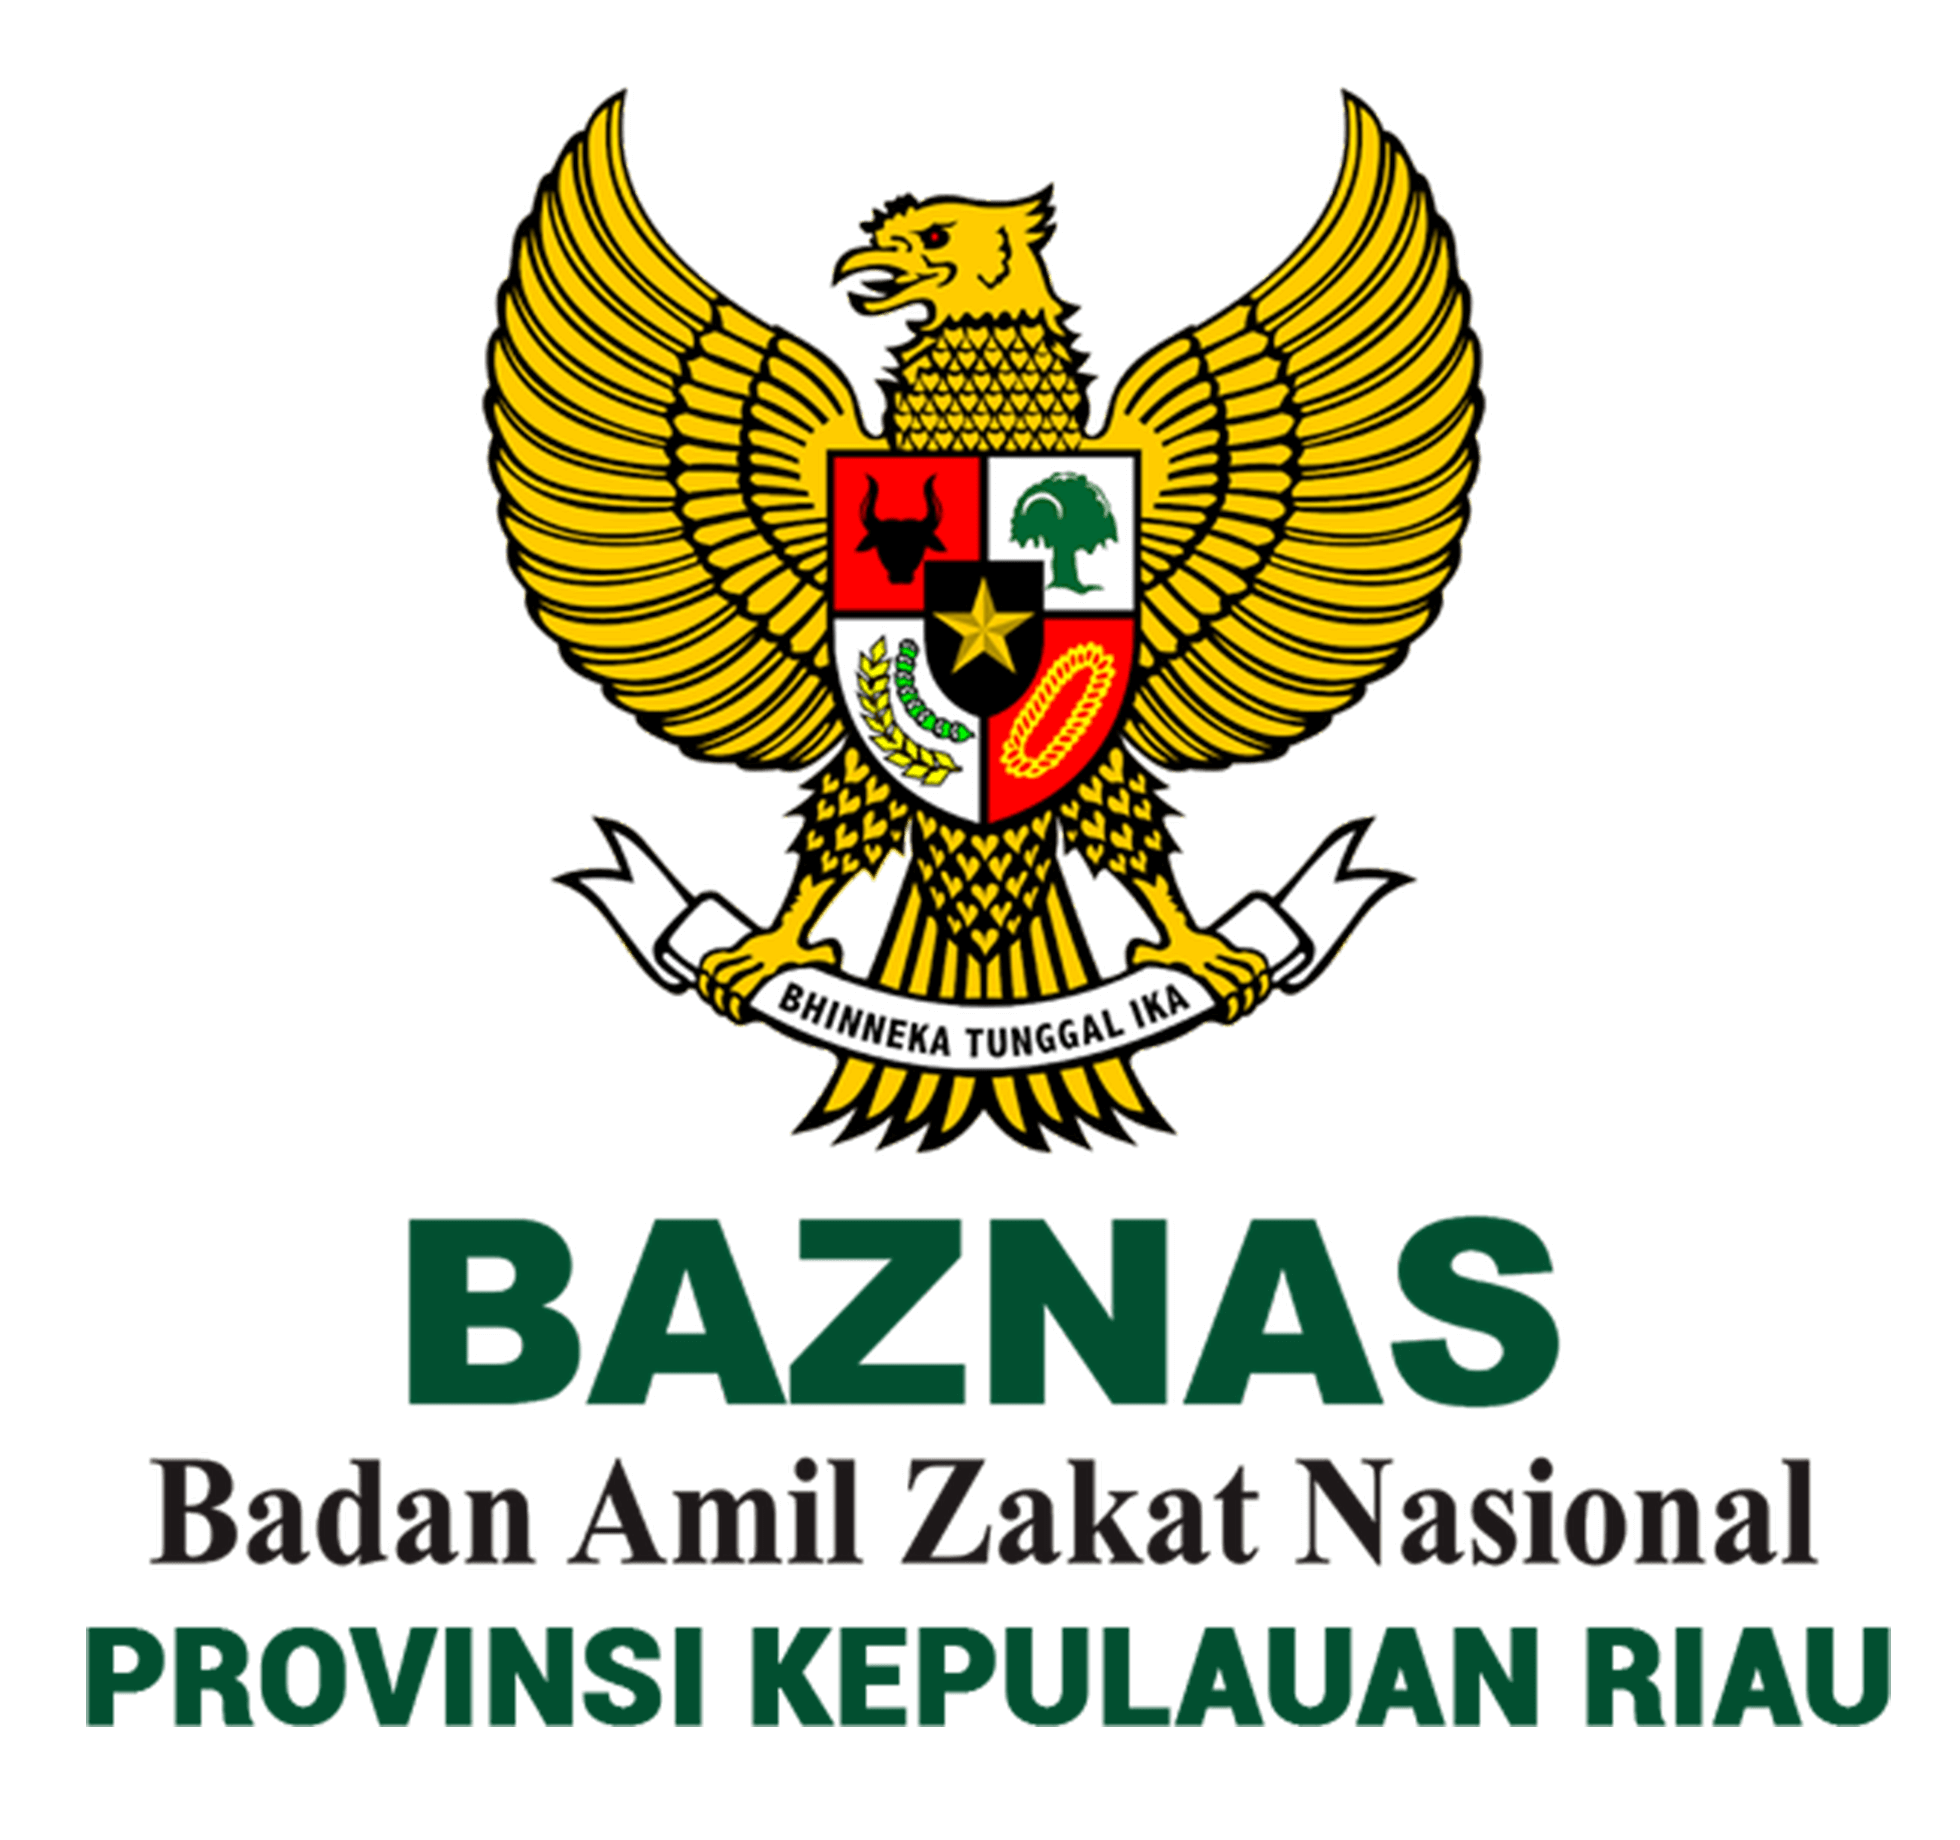 Logo Baznas Kepri